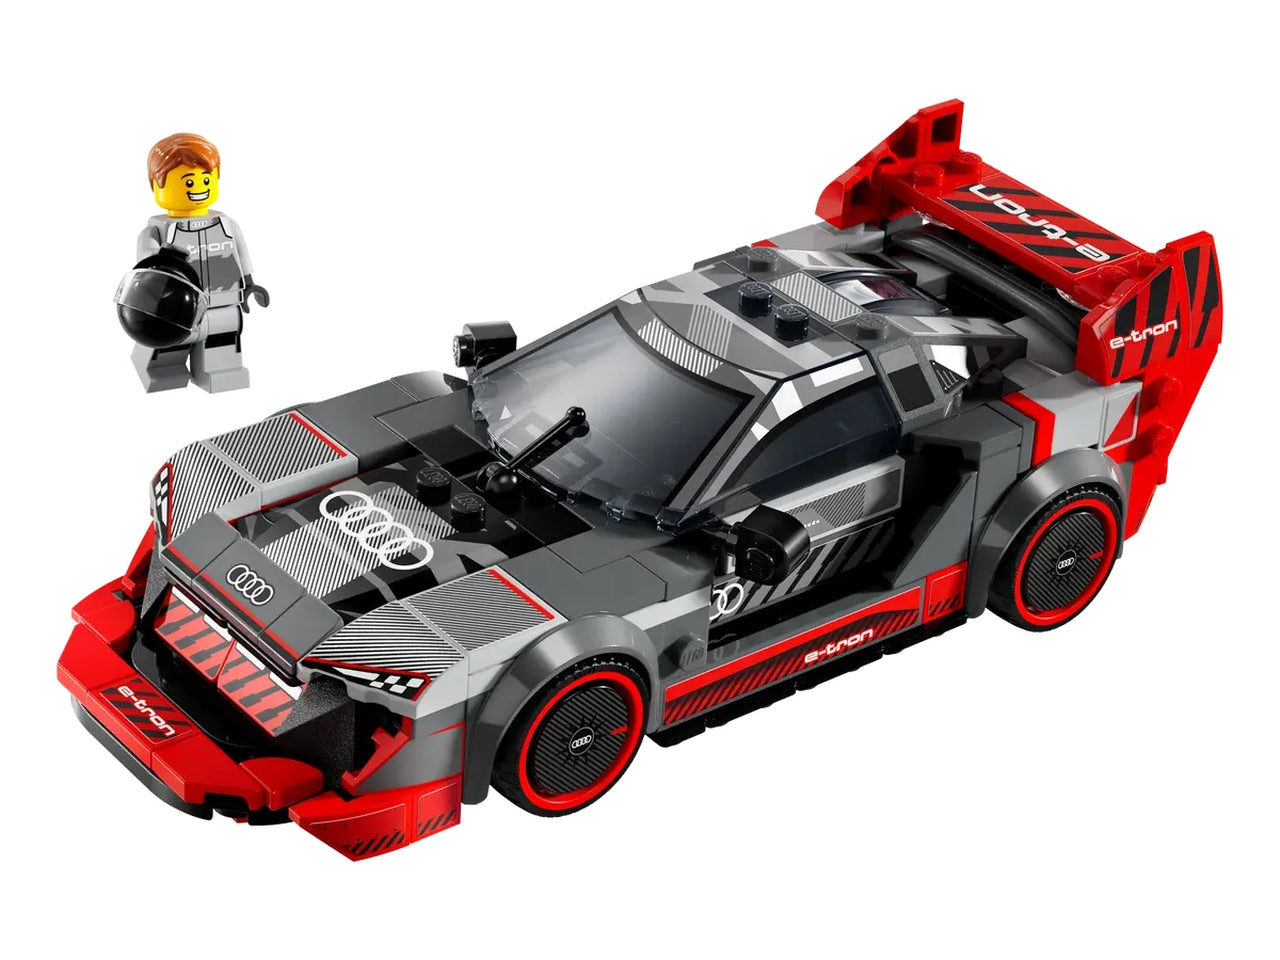 Lego speed champions auto da corsa audi s1 e-tron quattro